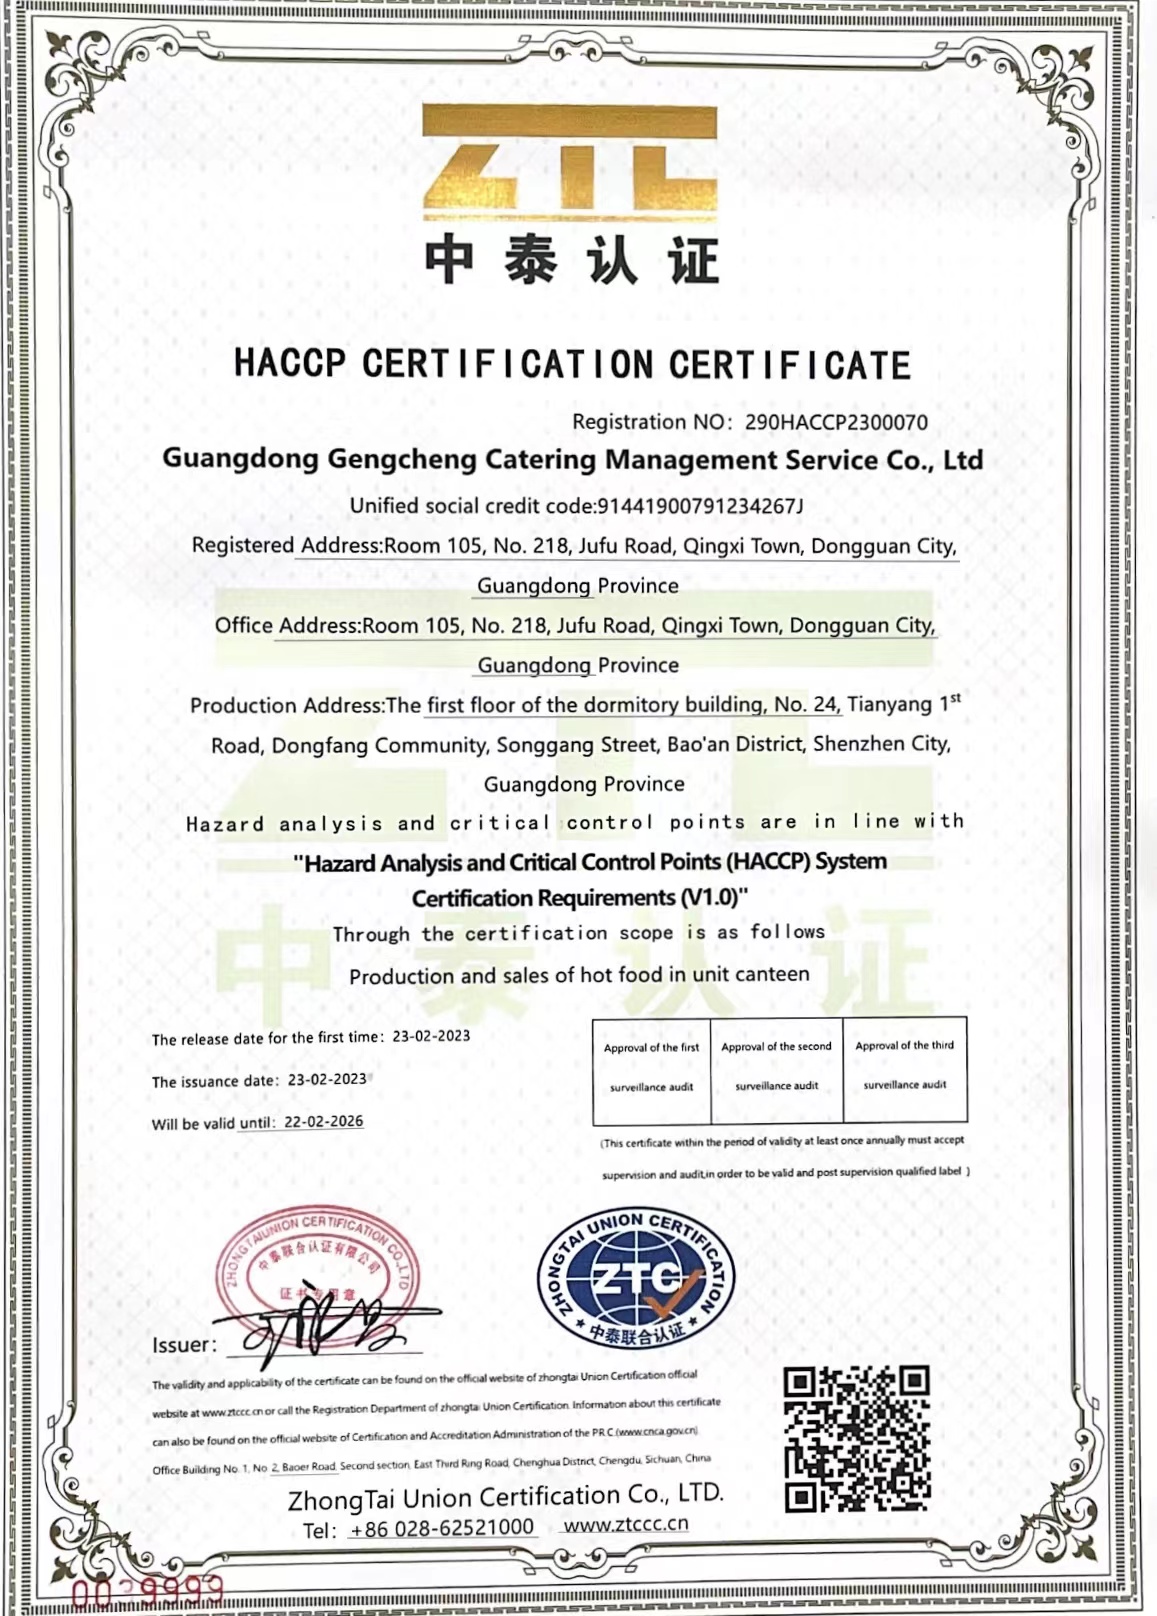 危害分析与关键控制点（HACCP）体系认证证书  英文版